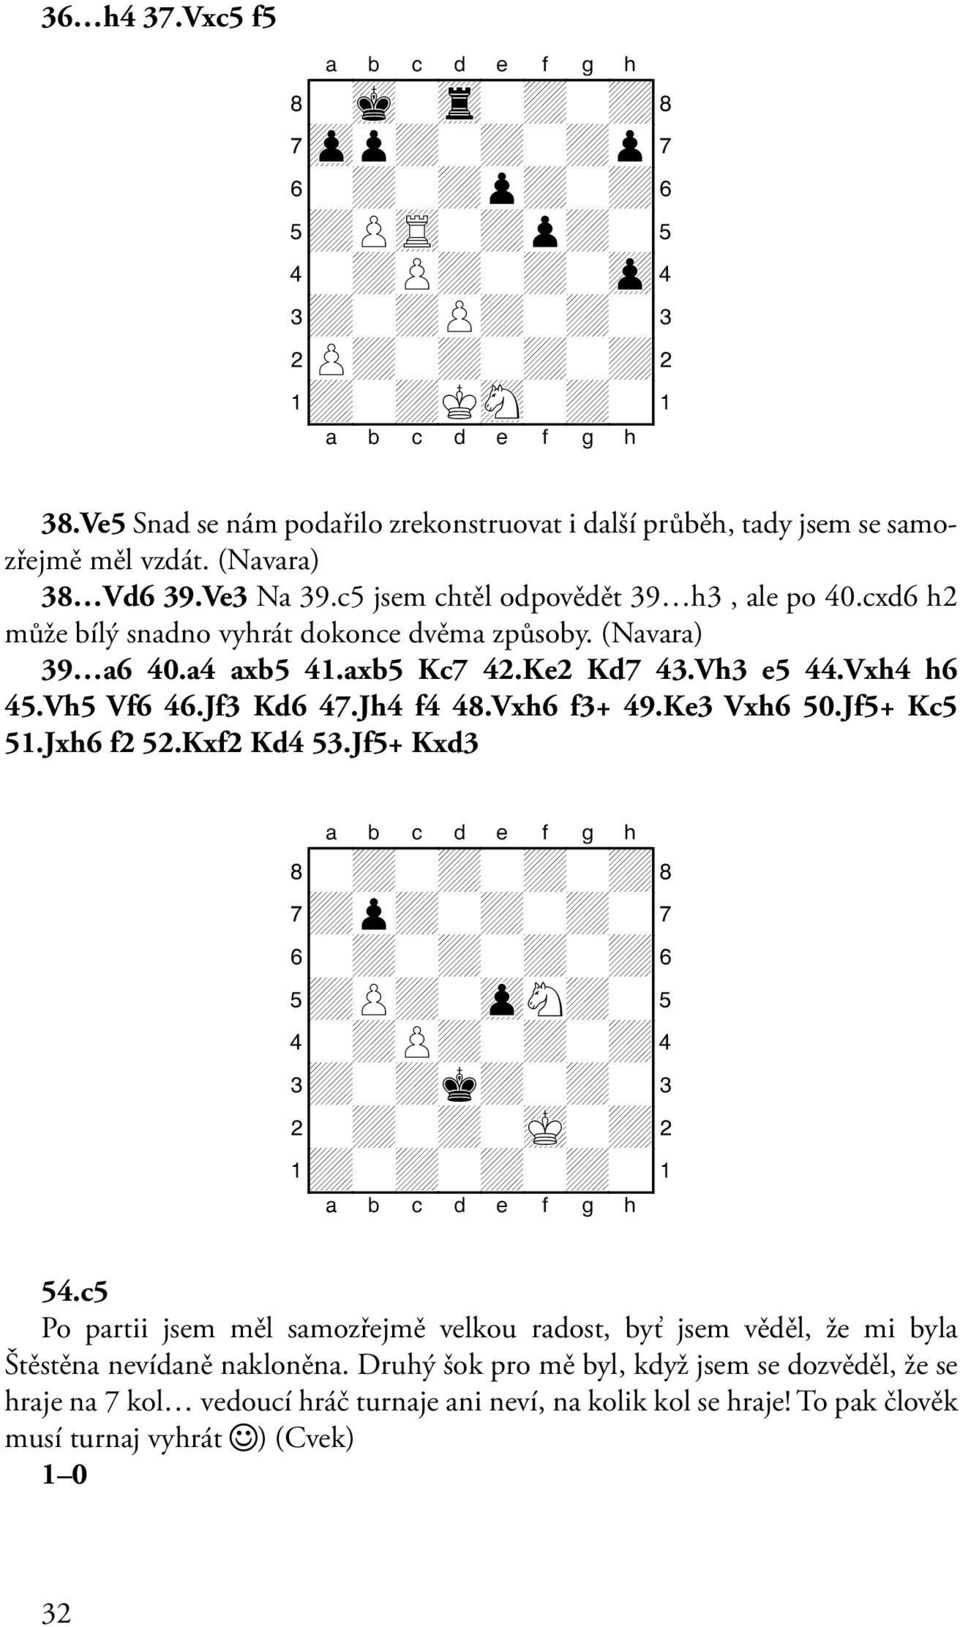 Jf3 Kd6 47.Jh4 f4 48.Vxh6 f3+ 49.Ke3 Vxh6 50.Jf5+ Kc5 51.Jxh6 f2 52.Kxf2 Kd4 53.Jf5+ Kxd3 8-+-+-+-+( 7+p+-+-+-' 6-+-+-+-+& 5+P+-zpN+-% 4-+P+-+-+$ 3+-+k+-+-# 2-+-+-mK-+" 1+-+-+-+-! 54.